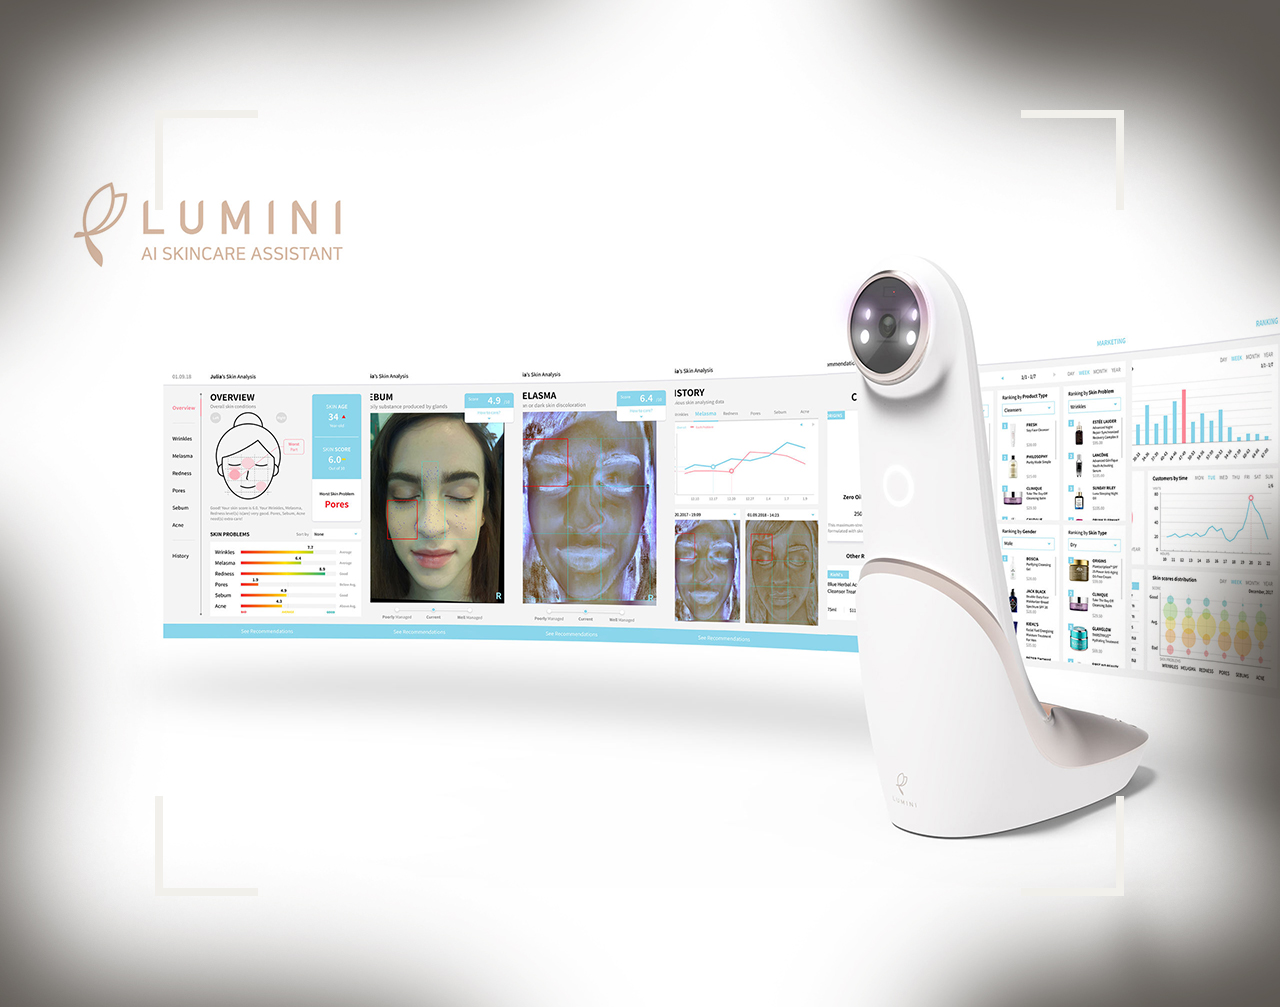 آینه هوشمند “لومینی” برای سلامت پوست